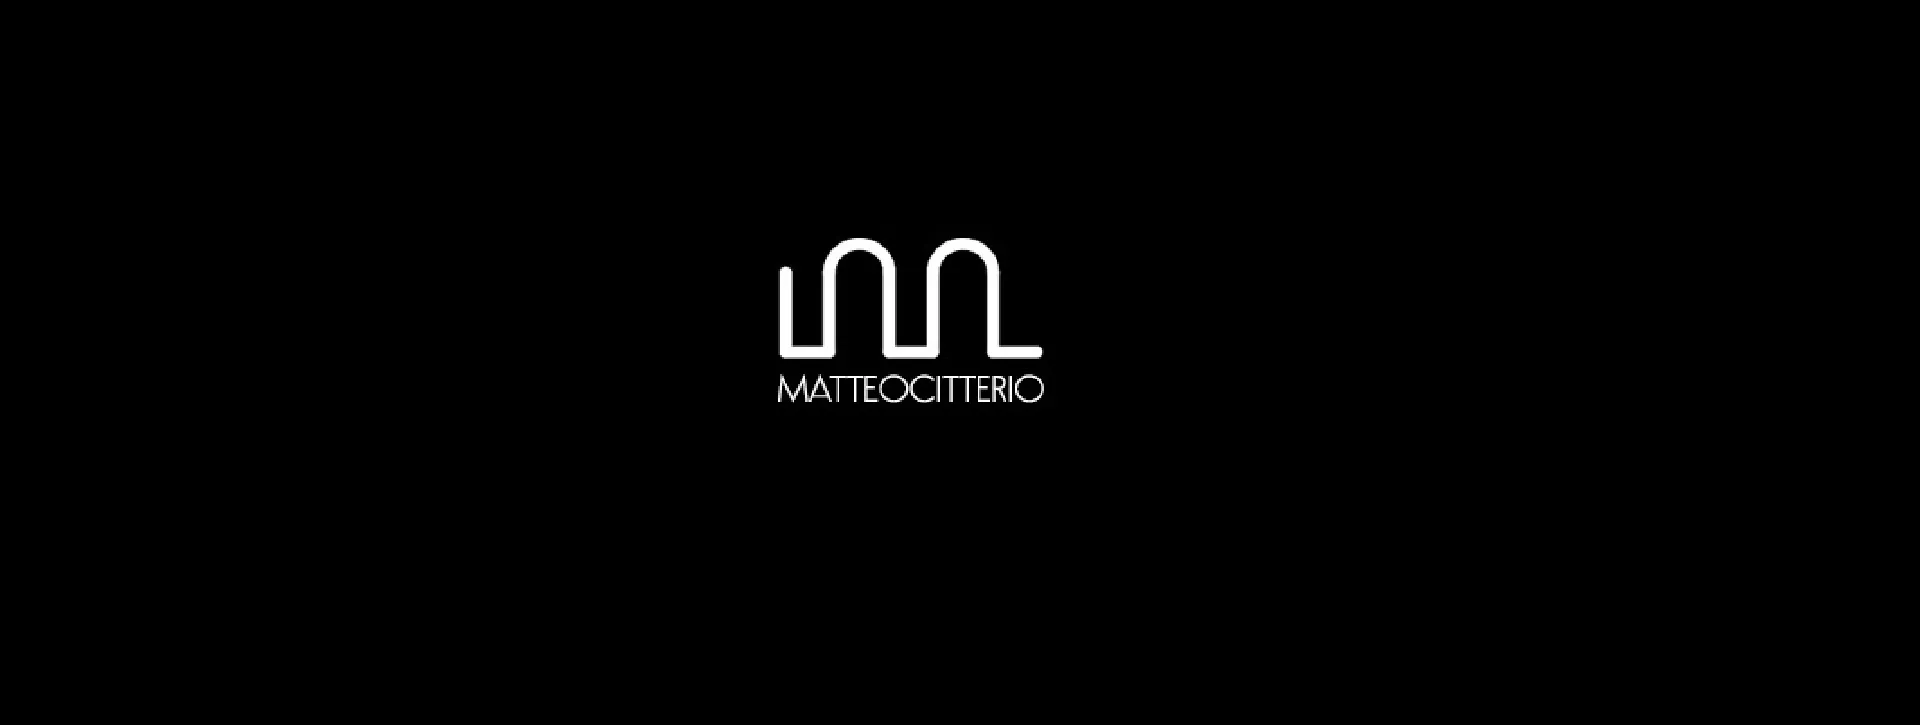 Logo_Designer_Matteo Citterio_Galbiati Fratelli